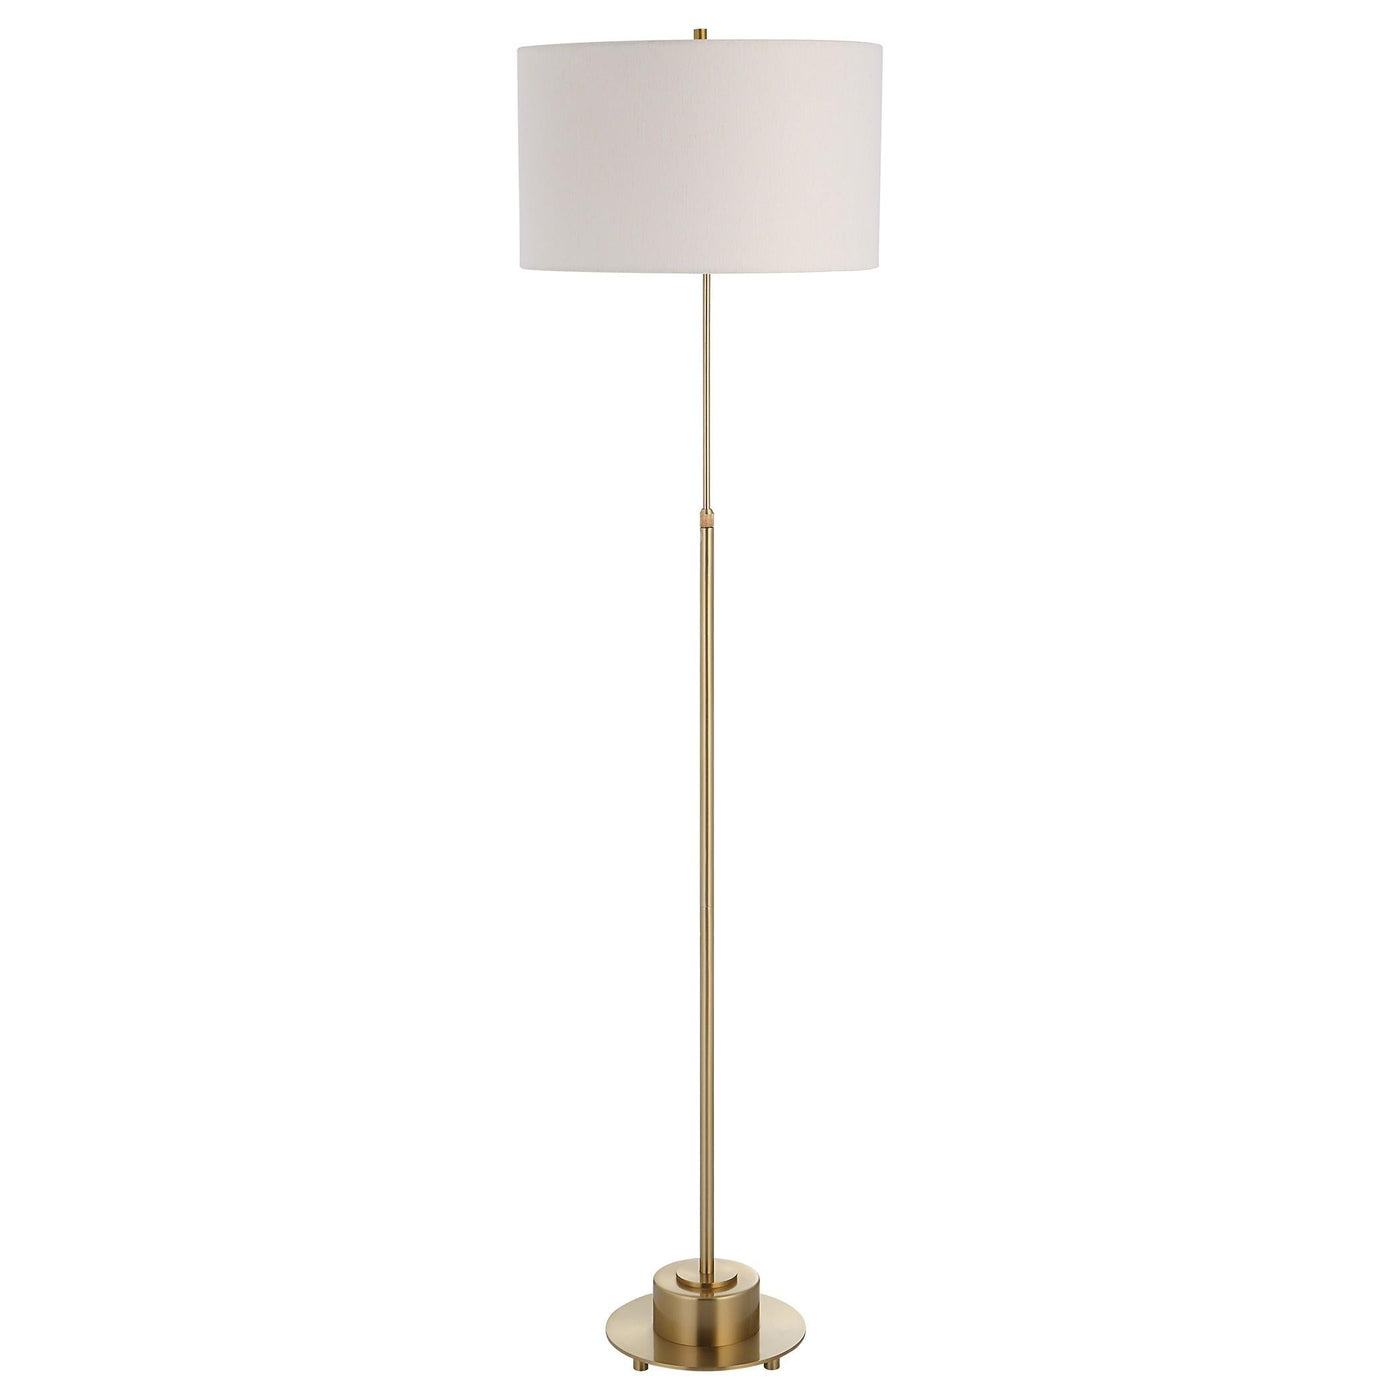 Uttermost Lighting Uttermost Prominence Brass Floor Lamp House of Isabella UK